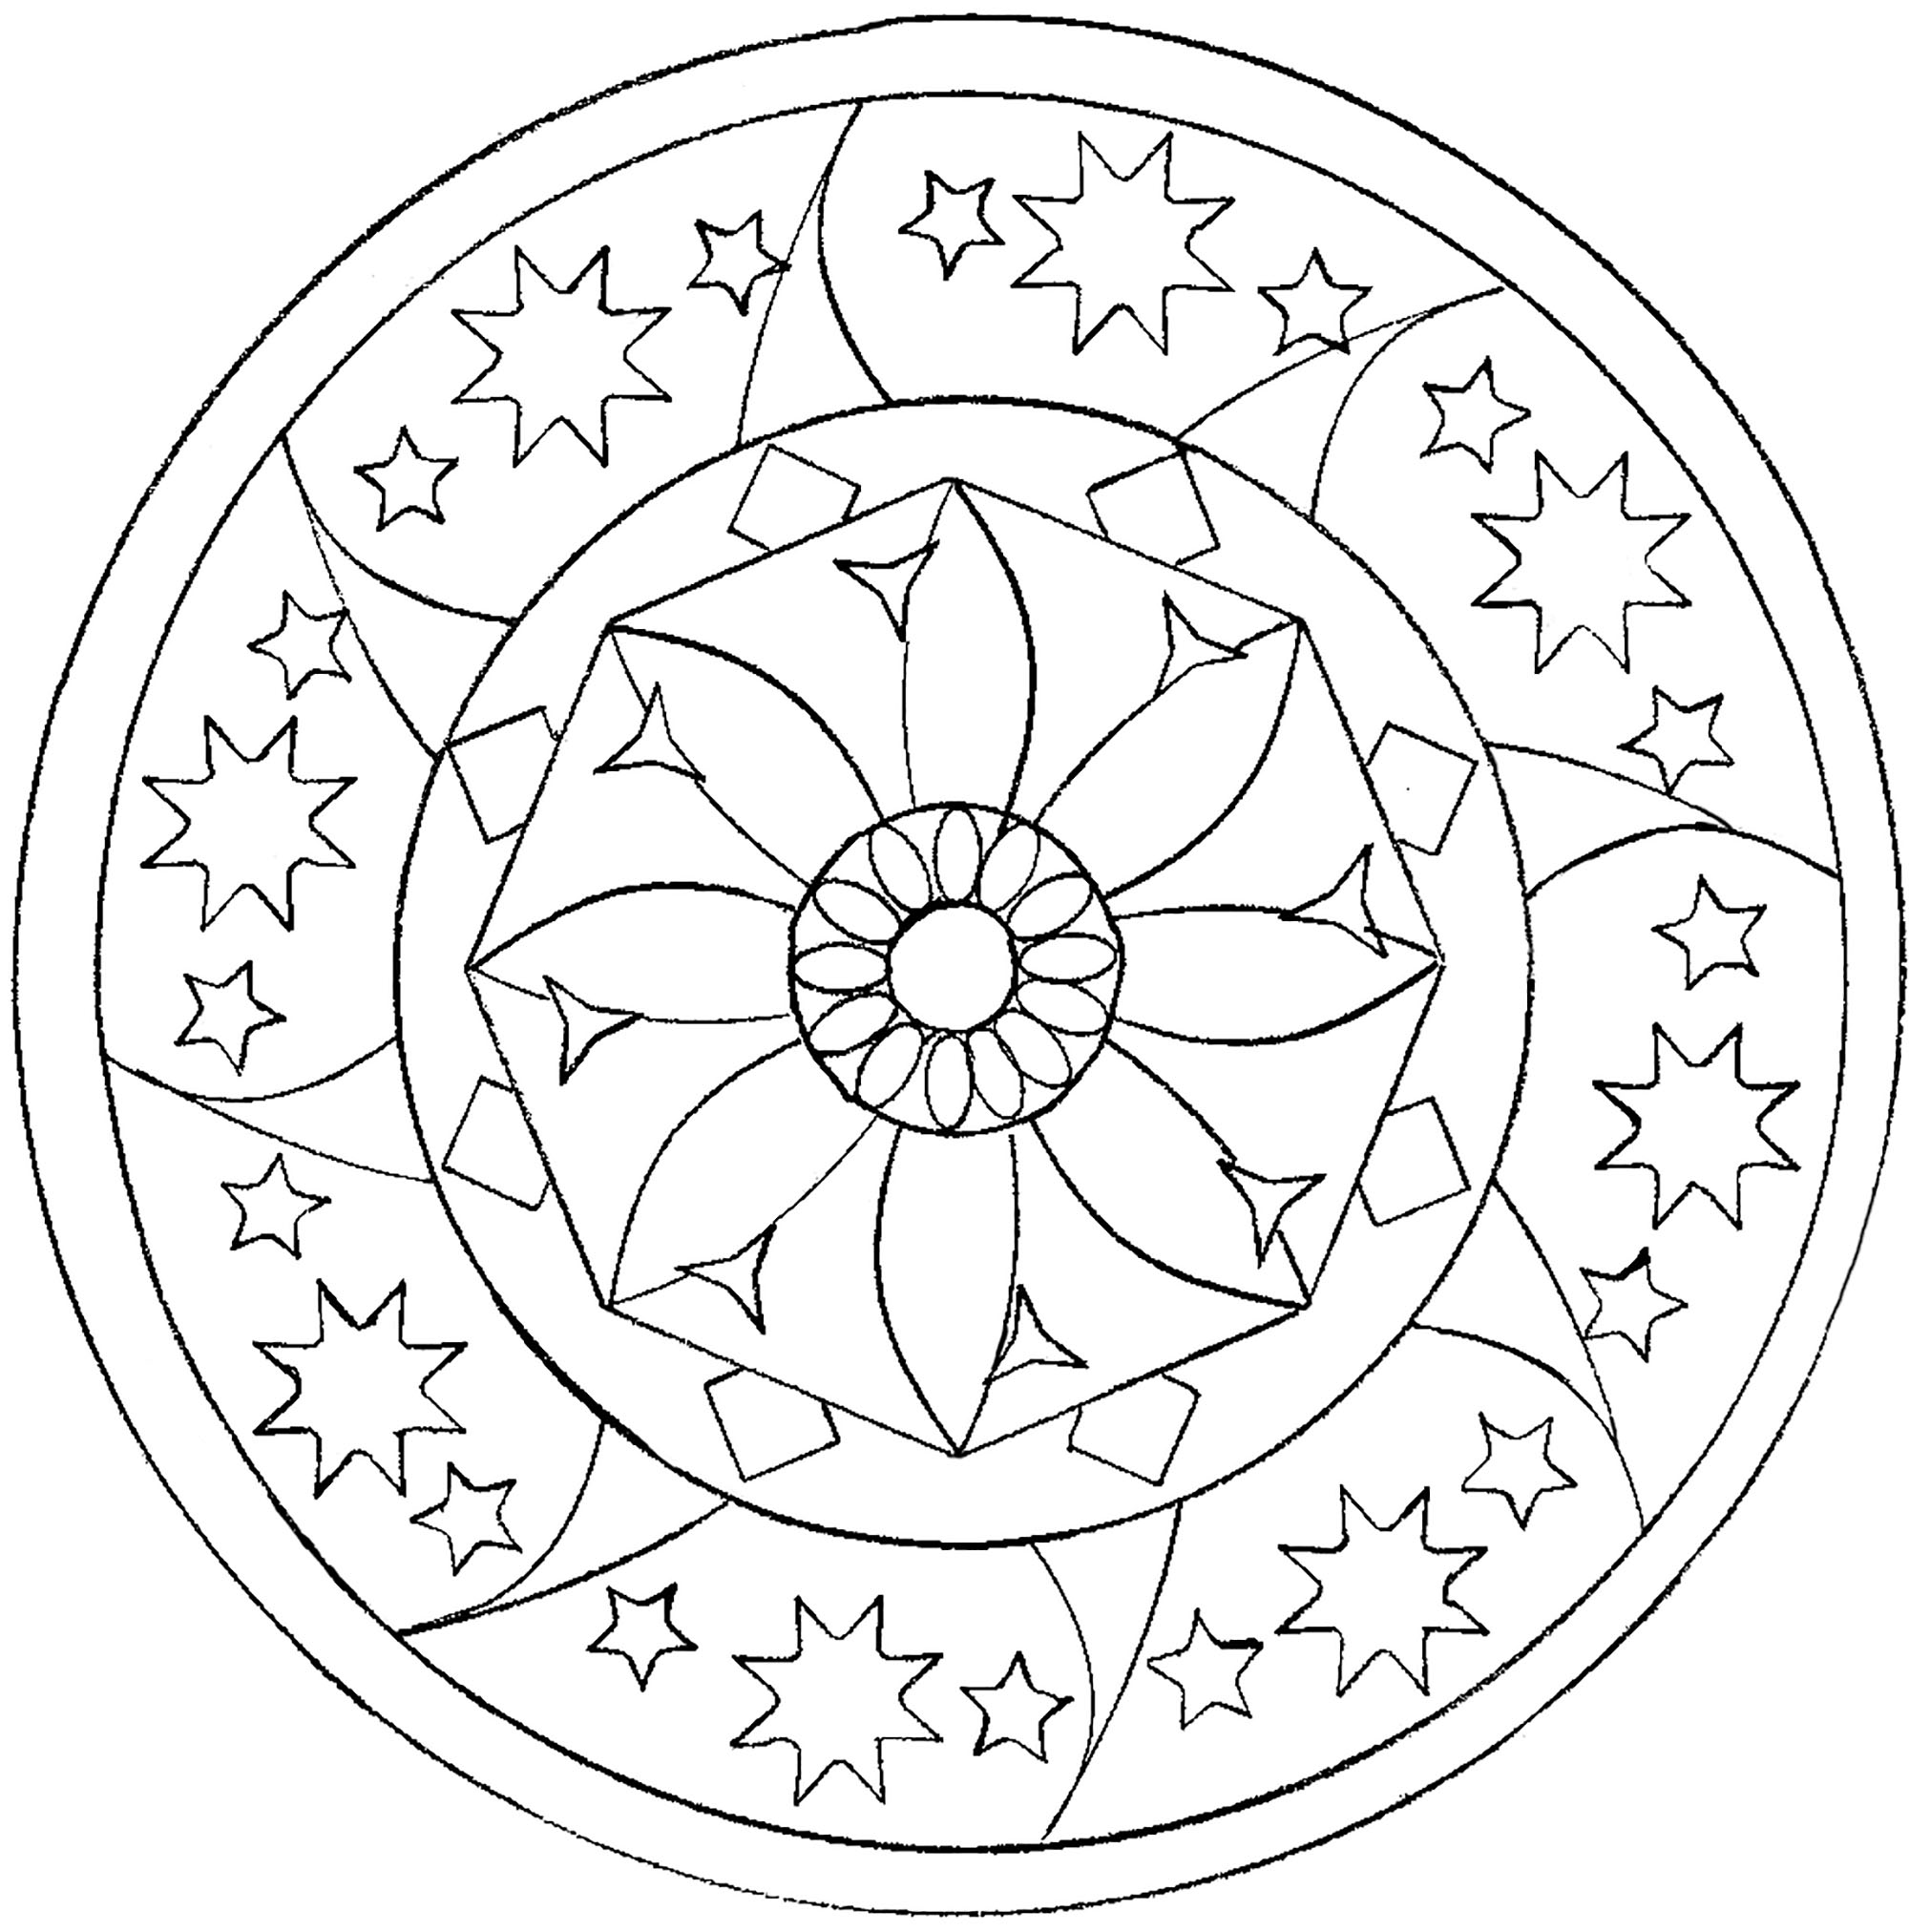 Há poucos pormenores para colorir nesta Mandala simples, que agradará a crianças e adultos que procuram simplicidade.